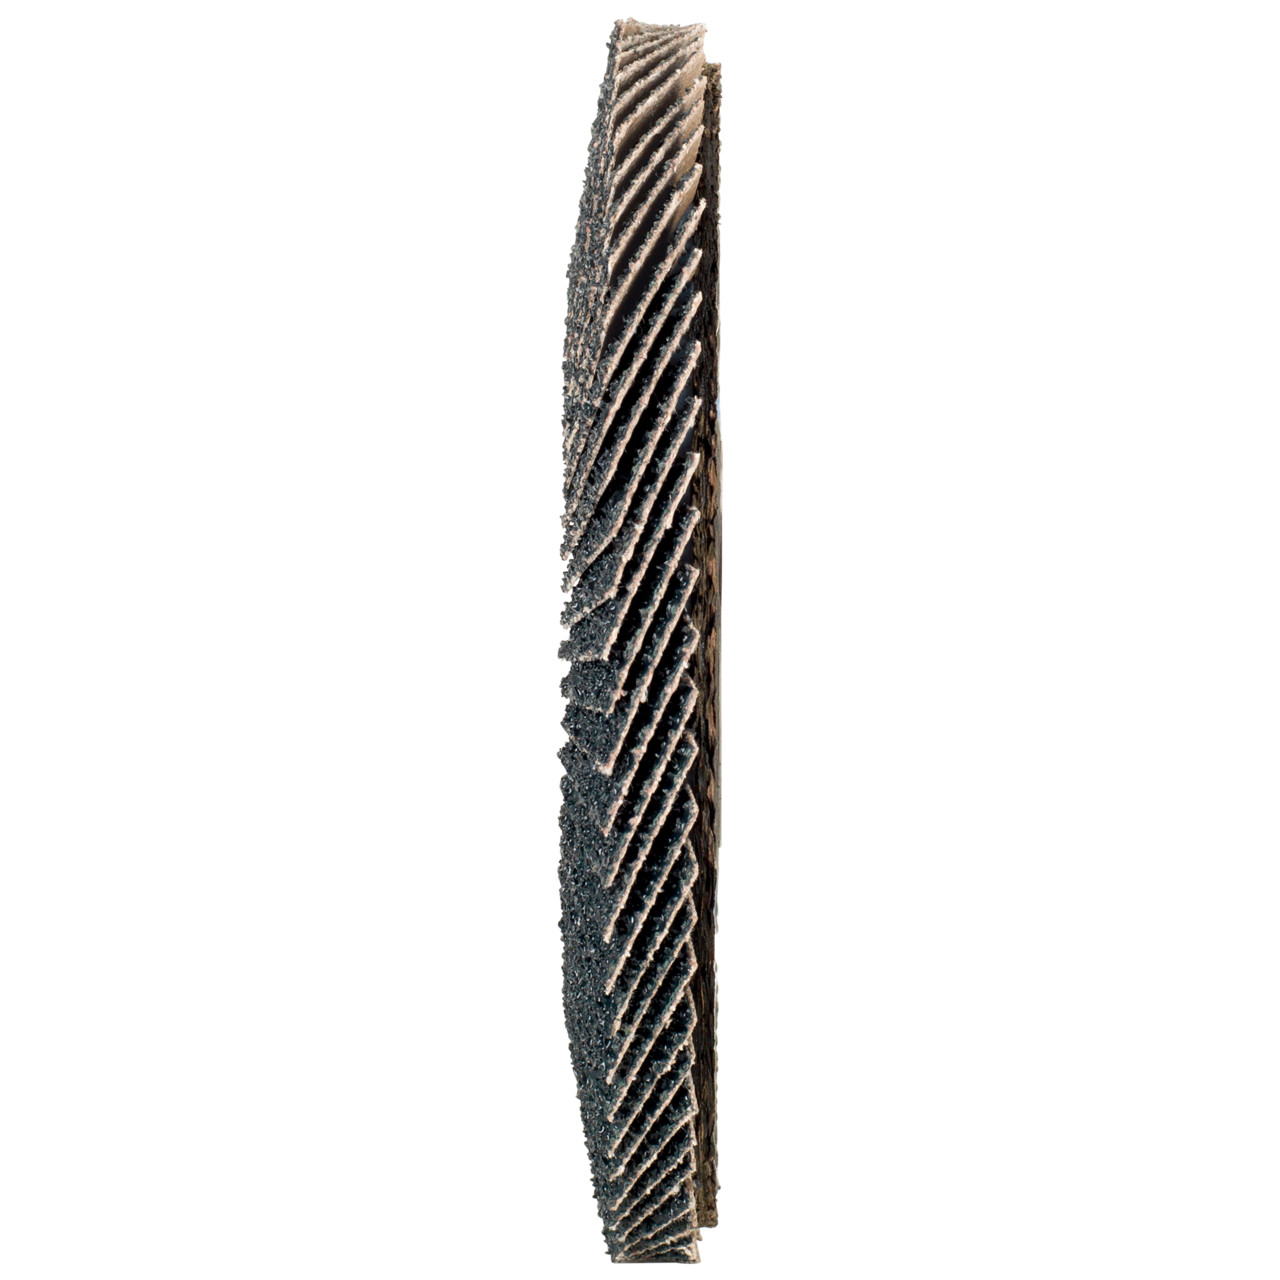 TYROLIT Fächerscheibe DxH 115x22,2 2in1 für Stahl & Edelstahl, P60, Form: 28A - gerade Ausführung (Glasfaserträgerkörperausführung), Art. 668687